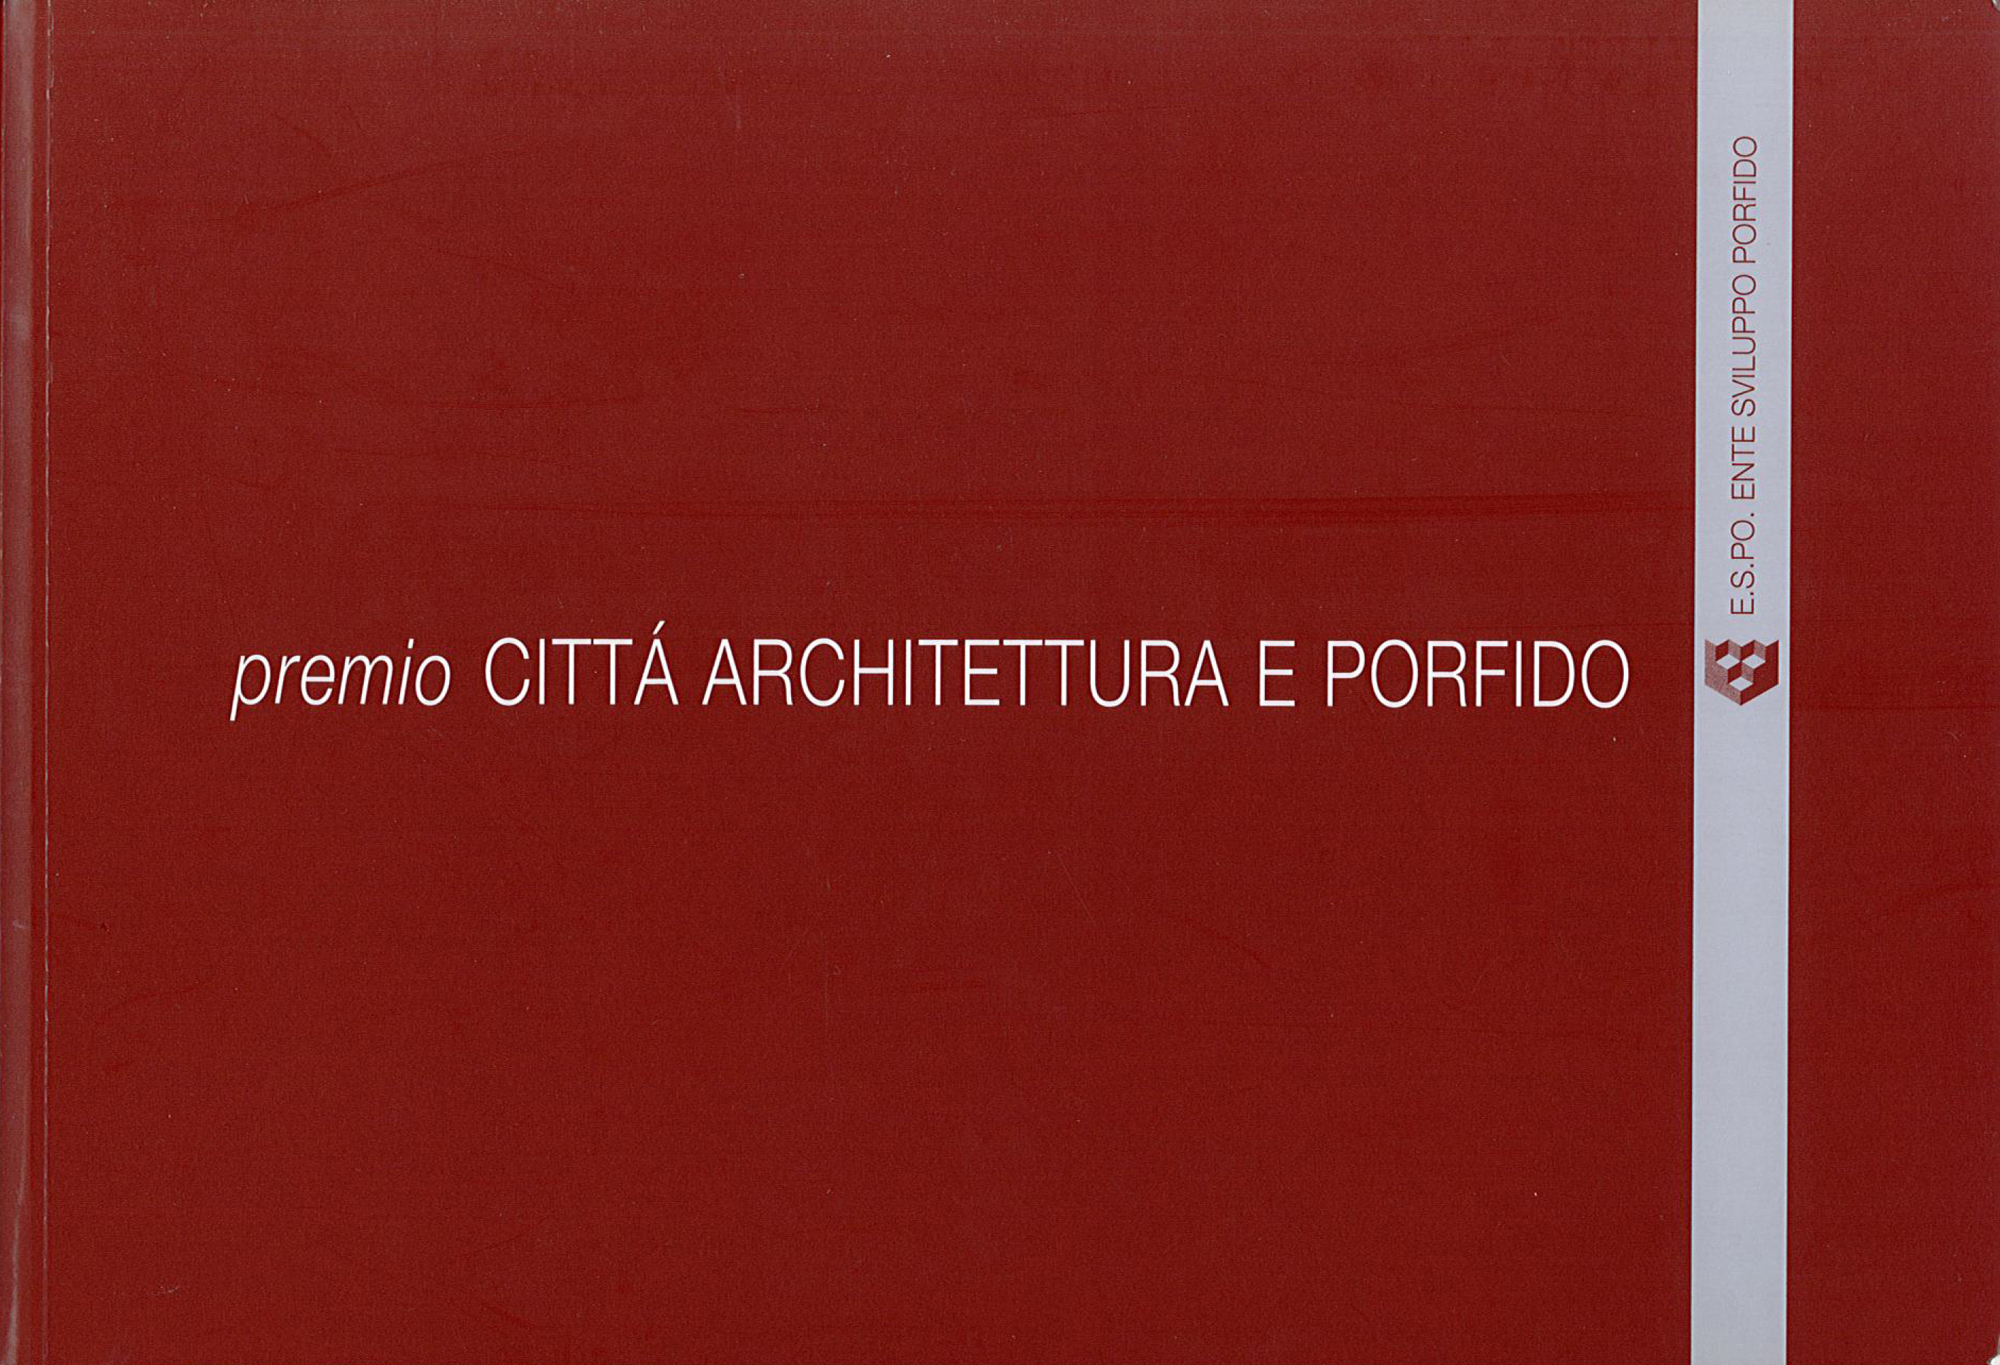 Pubblicazioni - Mimmo Premio città architettura porfido - oberti+oberti | architetti